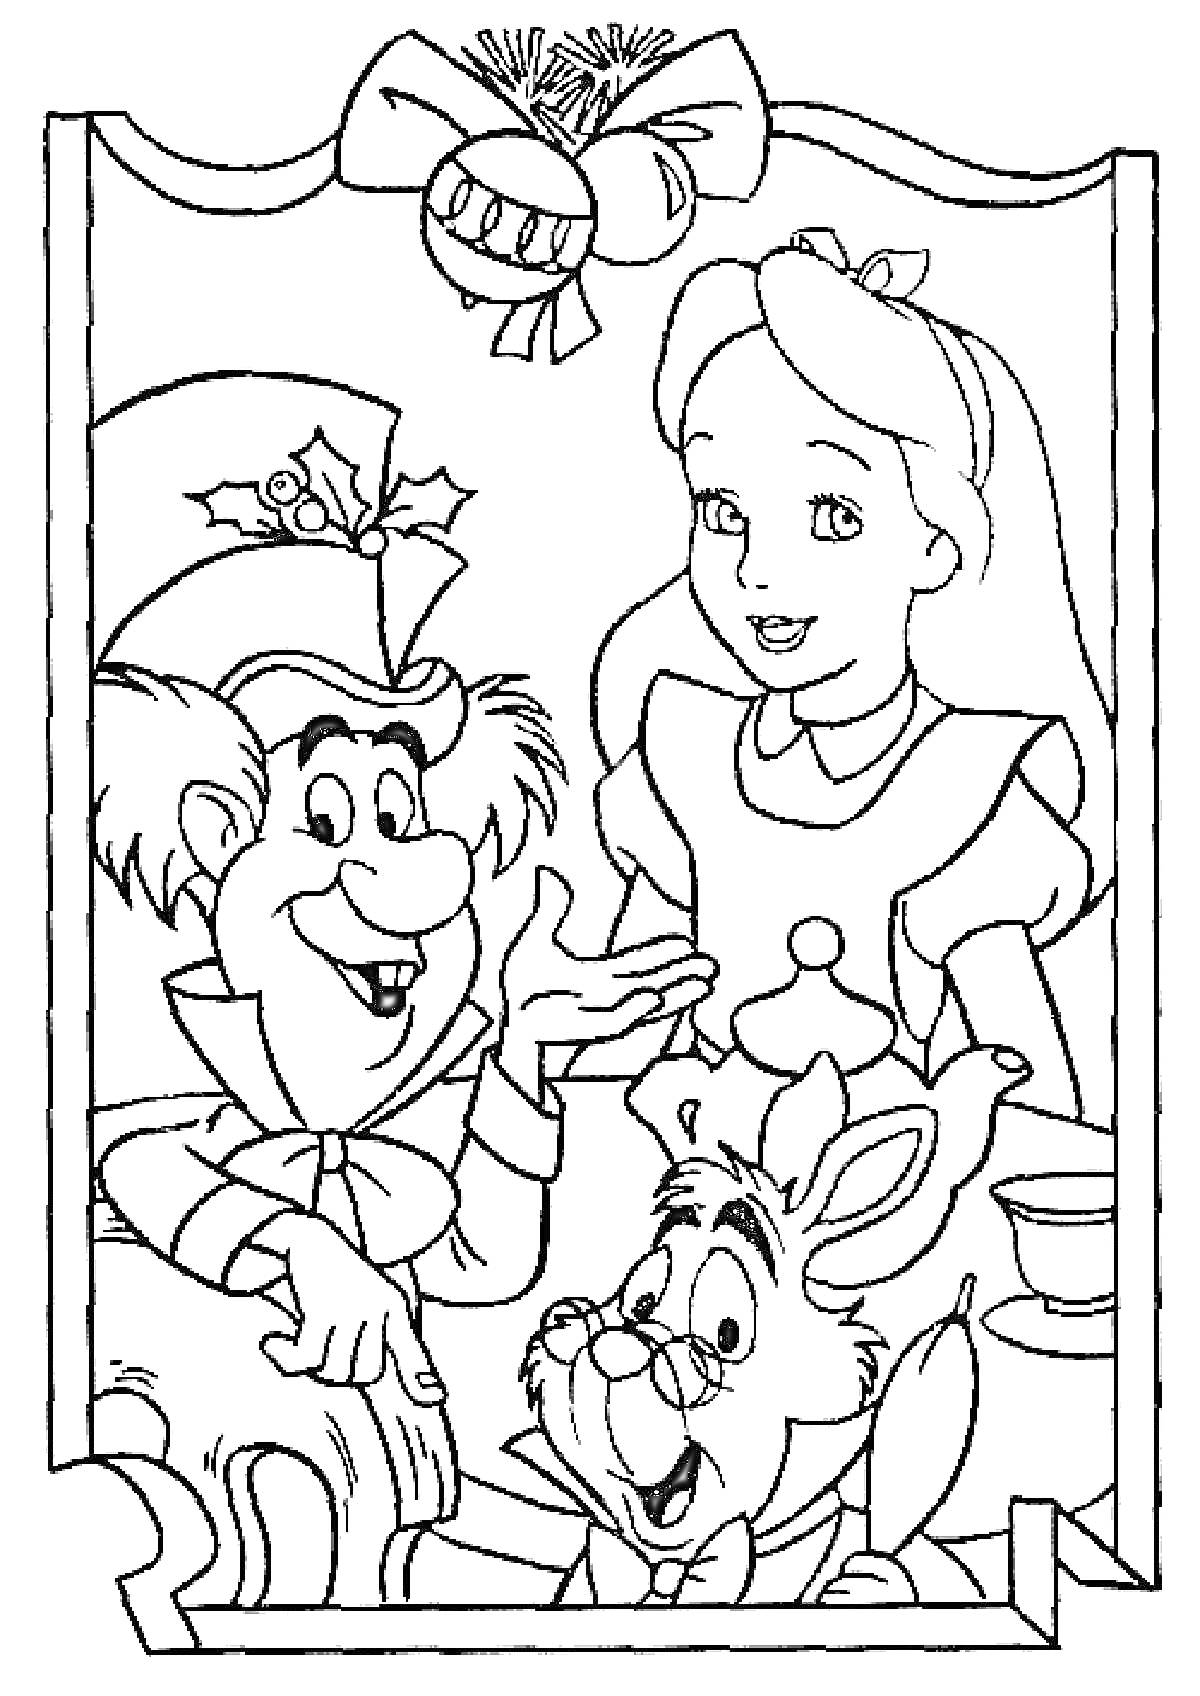 Алиса, Безумный Шляпник и Белый Кролик за накрытым столом в обрамлении с бантами и еловыми веточками